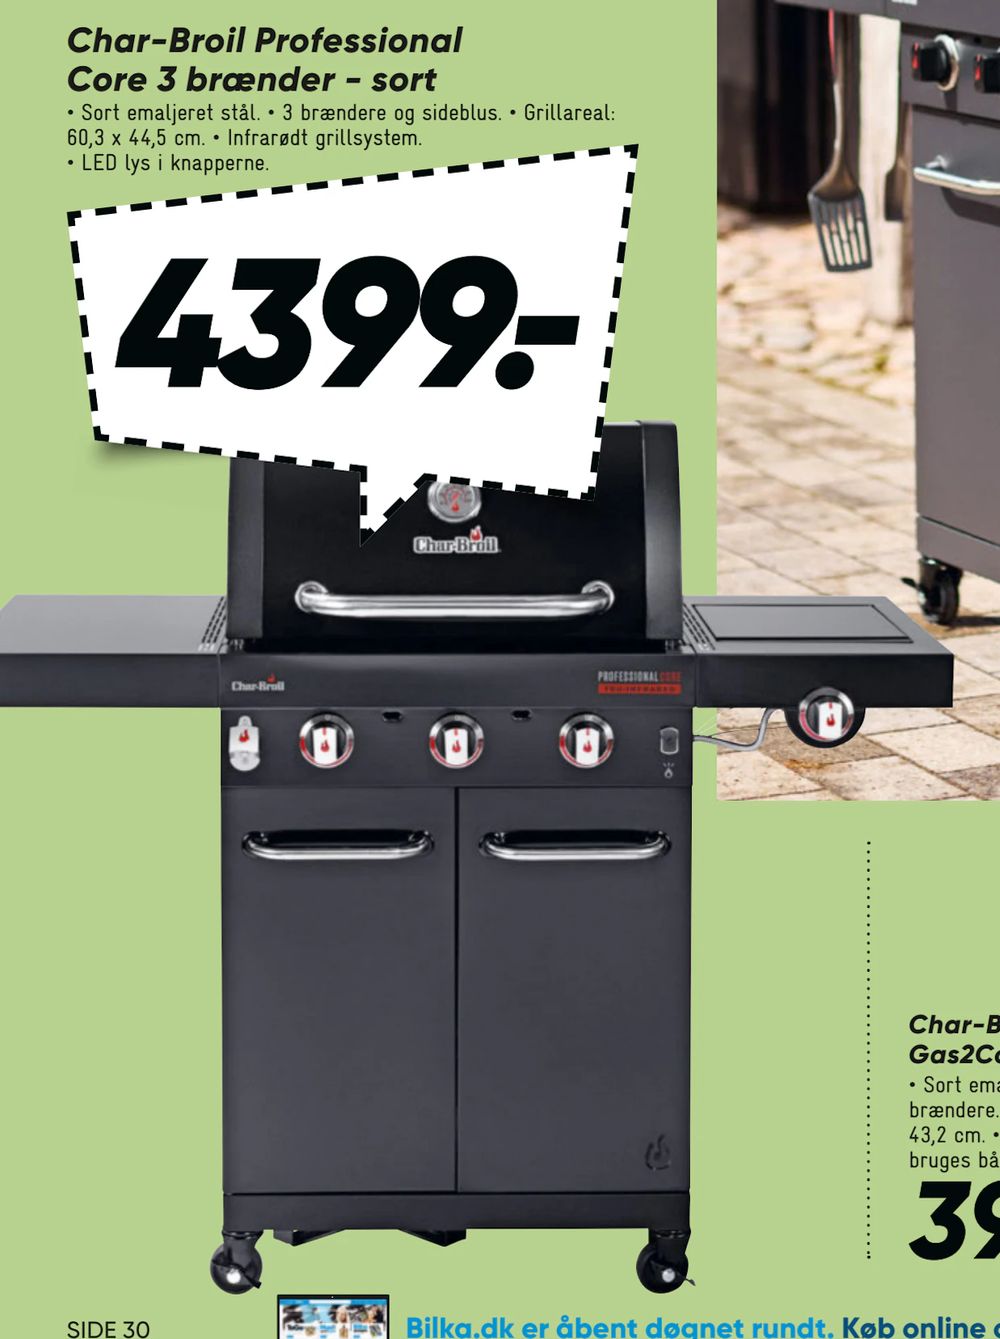 Tilbud på Char-Broil Professional Core 3 brænder - sort fra Bilka til 4.399 kr.